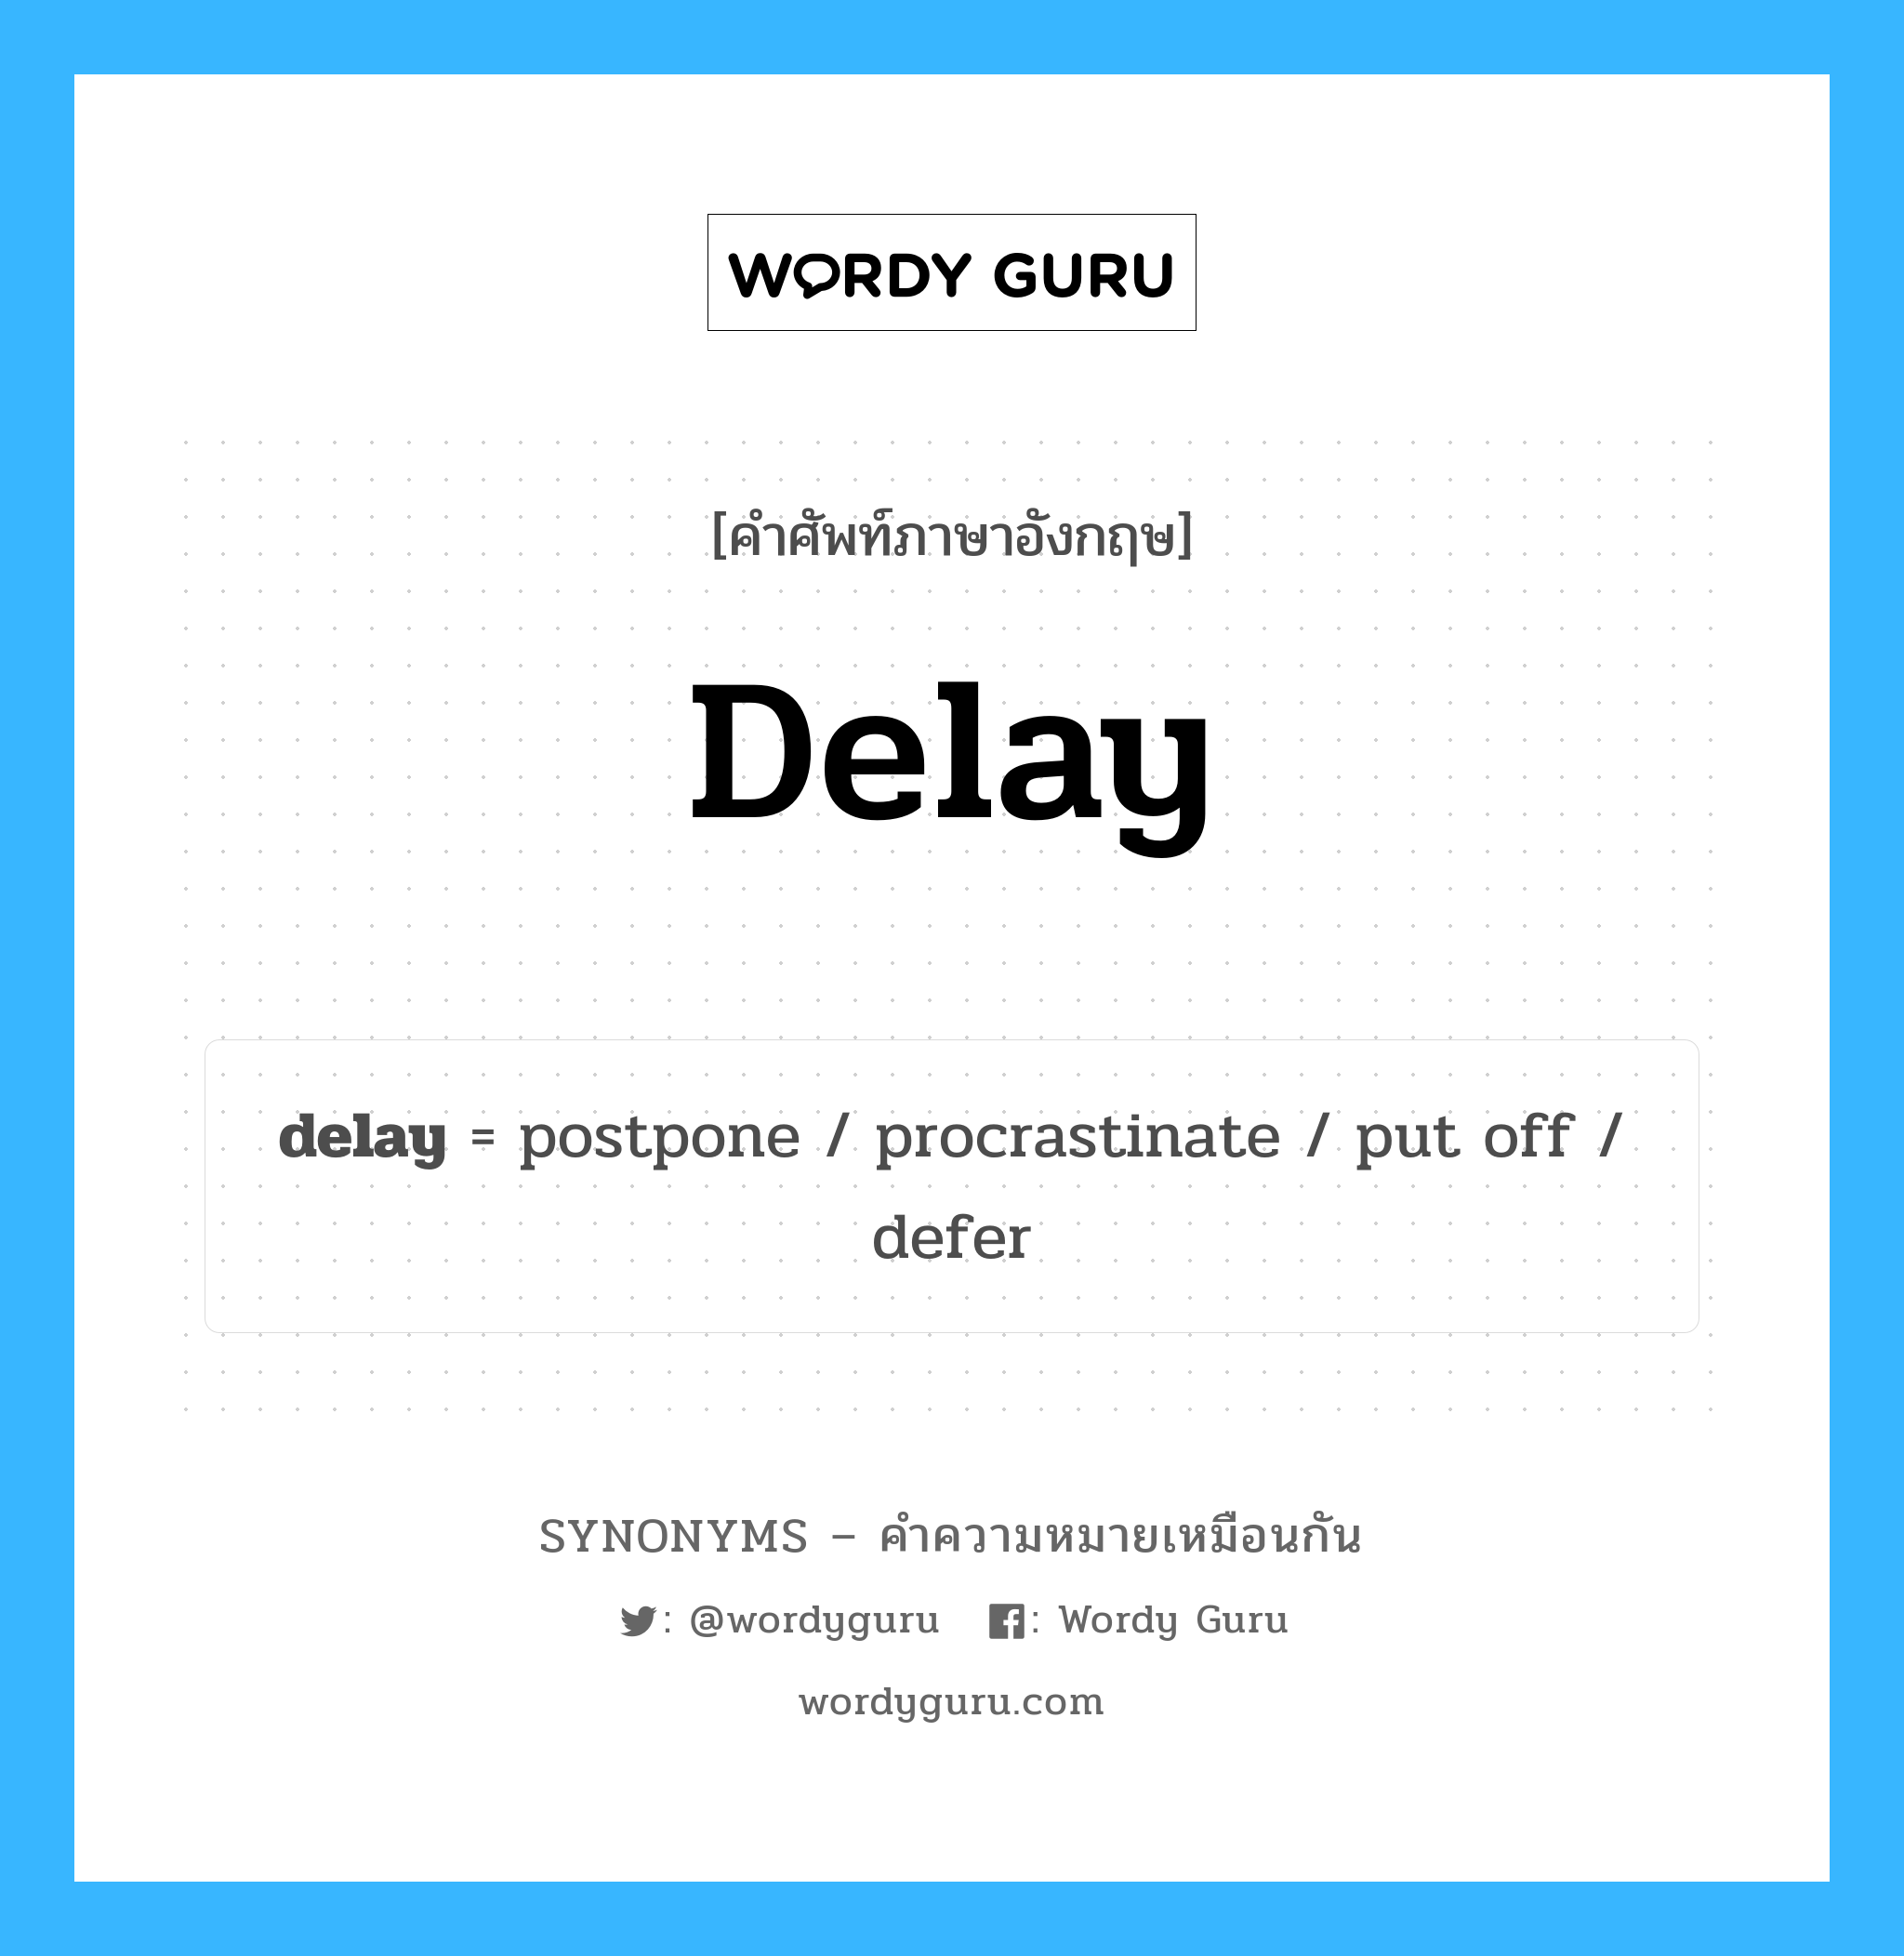 defer เป็นหนึ่งใน delay และมีคำอื่น ๆ อีกดังนี้, คำศัพท์ภาษาอังกฤษ defer ความหมายคล้ายกันกับ delay แปลว่า เลื่อน หมวด delay